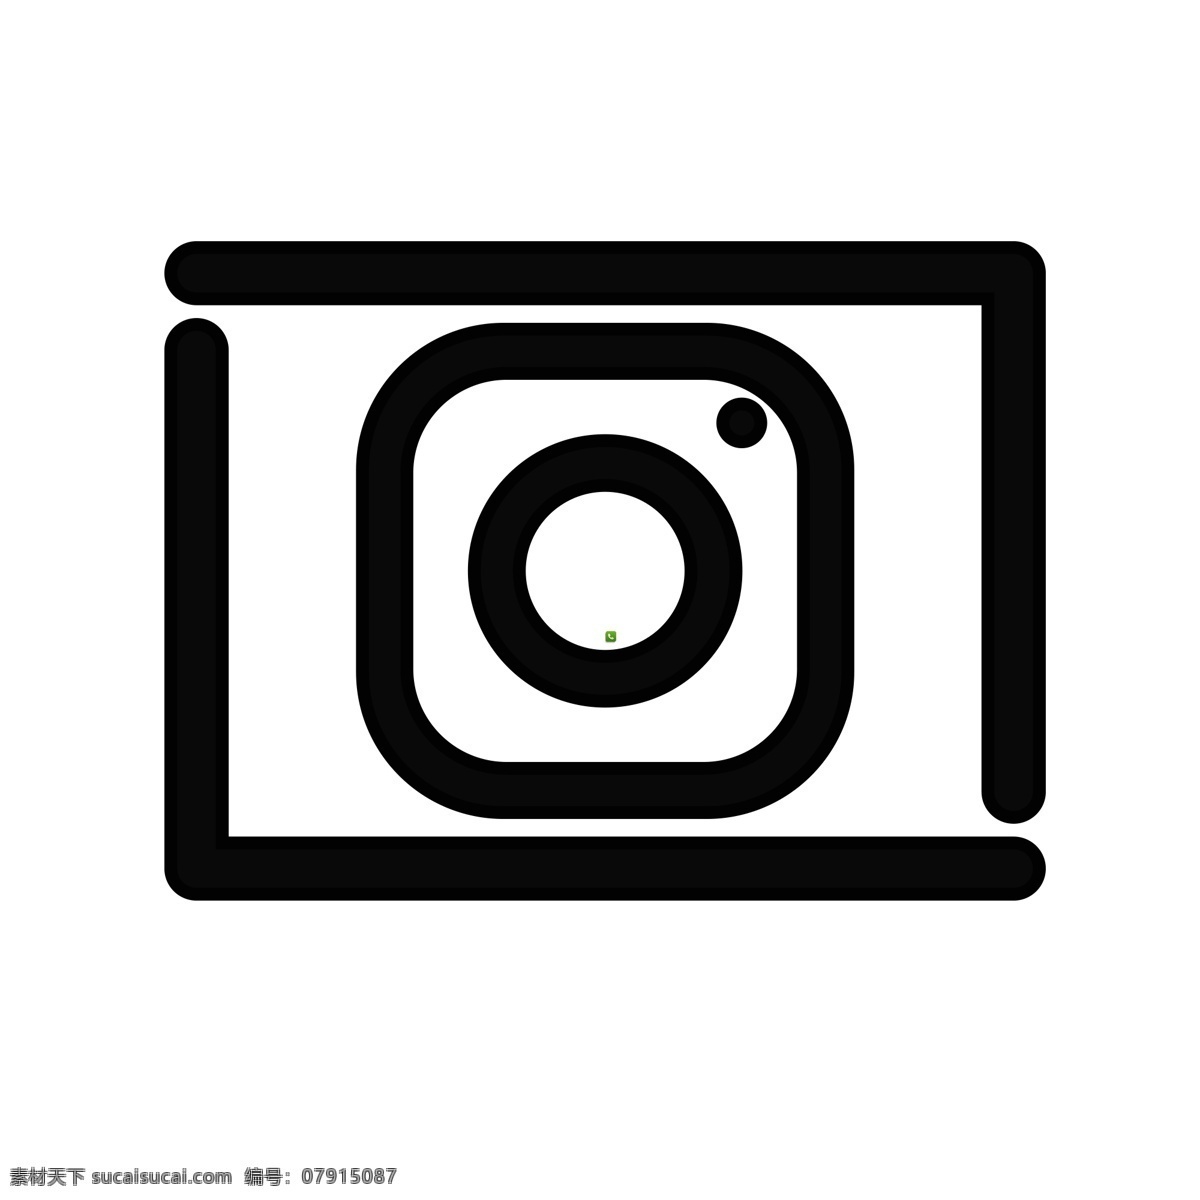 扁平化相机 照相机 扁平化ui ui图标 手机图标 界面ui 网页ui h5图标